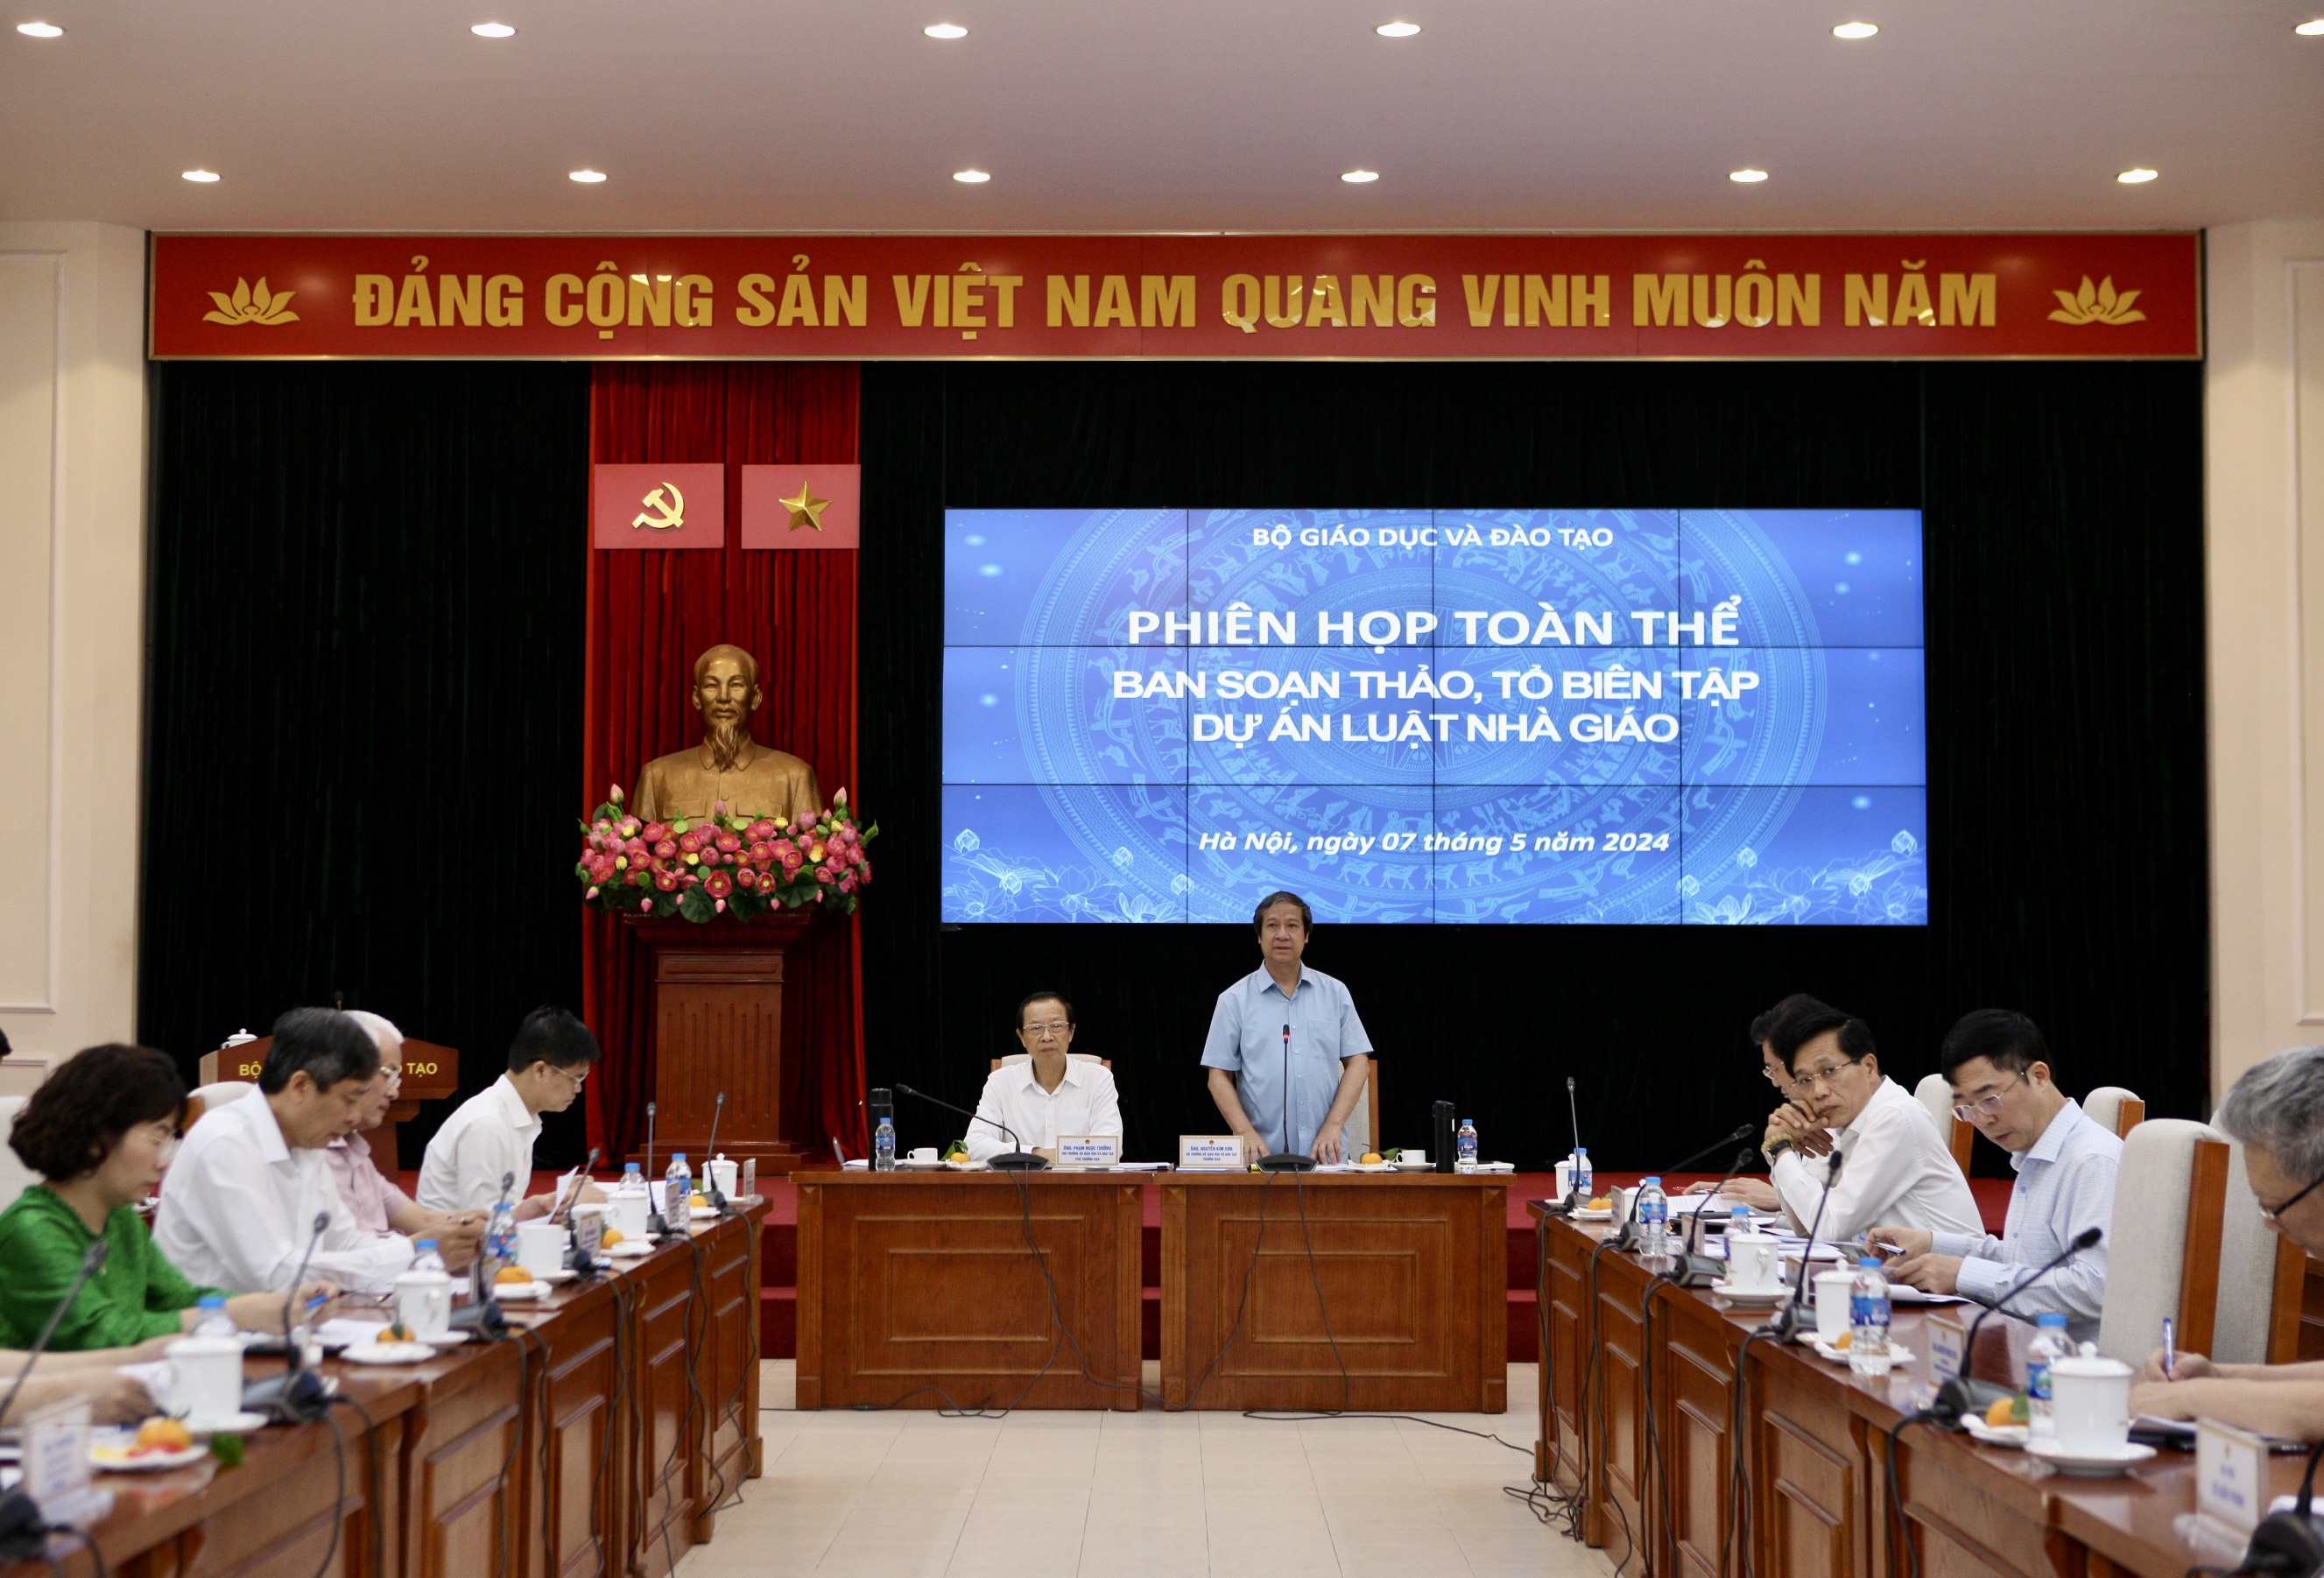 Bộ trưởng Nguyễn Kim Sơn, Trưởng Ban soạn thảo Dự án Luật Nhà giáo phát biểu khai mạc phiên họp.